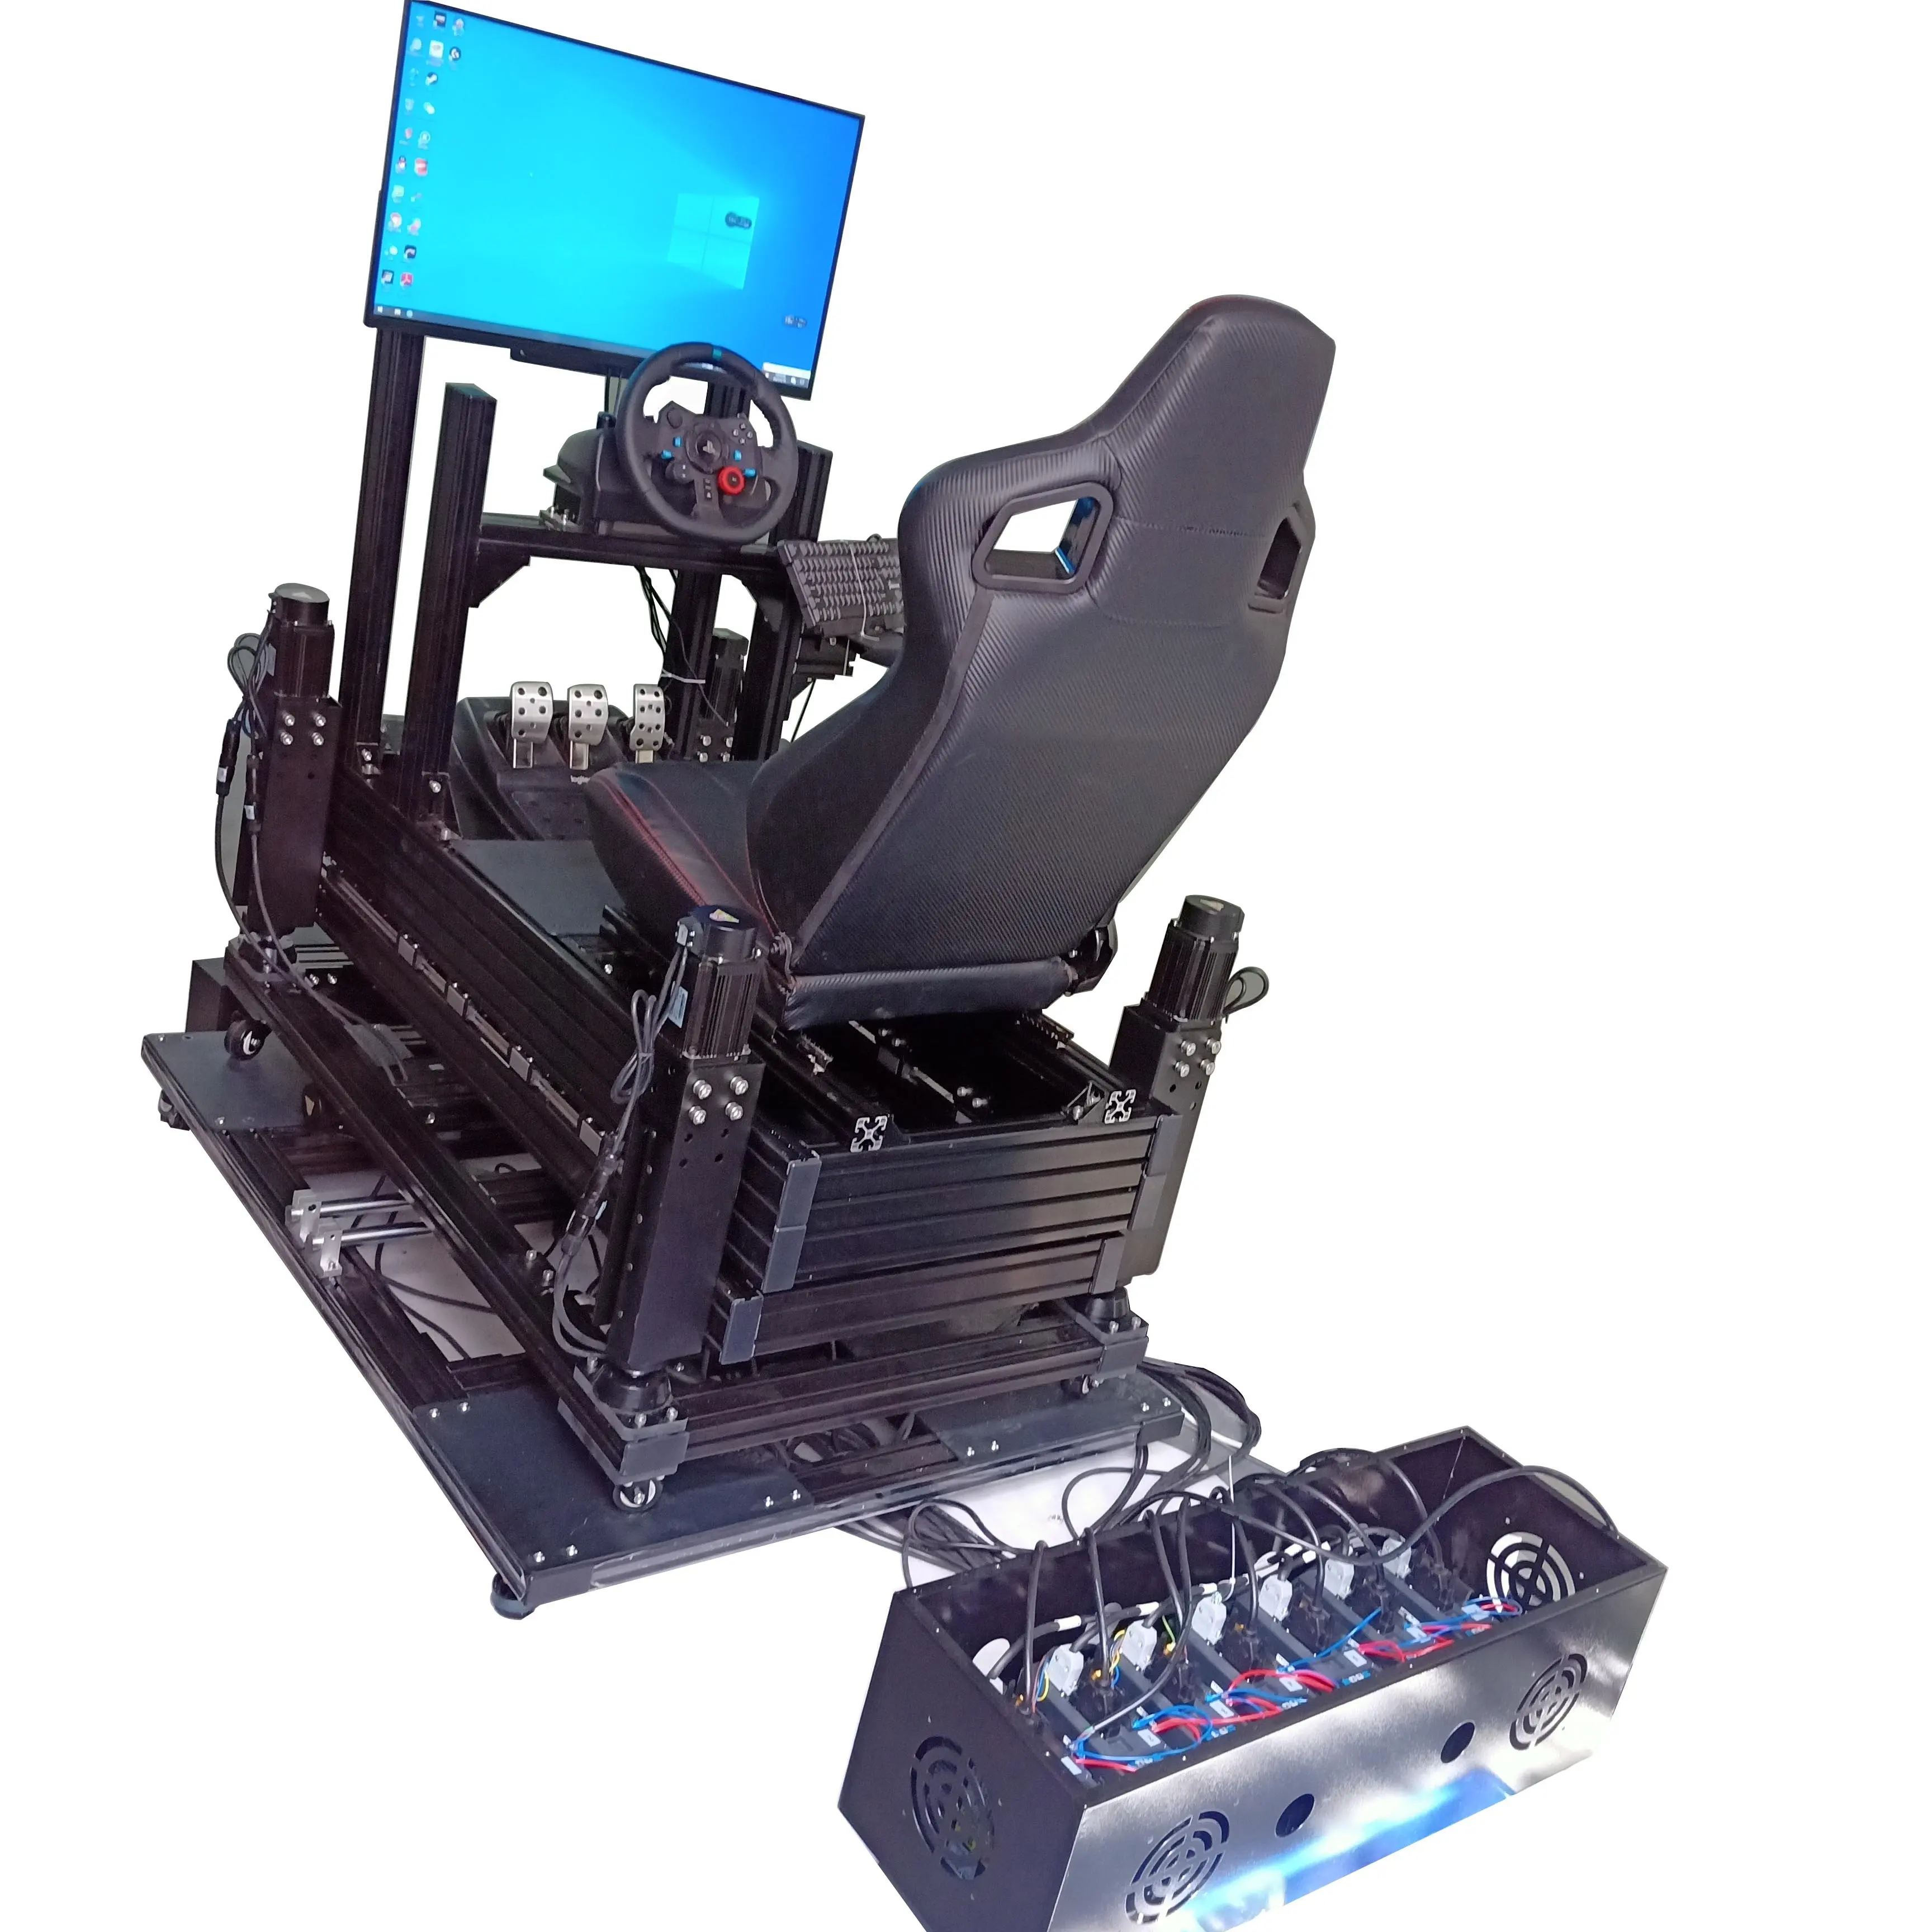 OEM/ODM 자동차 경주 시뮬레이터 4DOF + TL + 서지 서보 모터 액추에이터 키트 홈 플레이어 또는 플레이 하우스